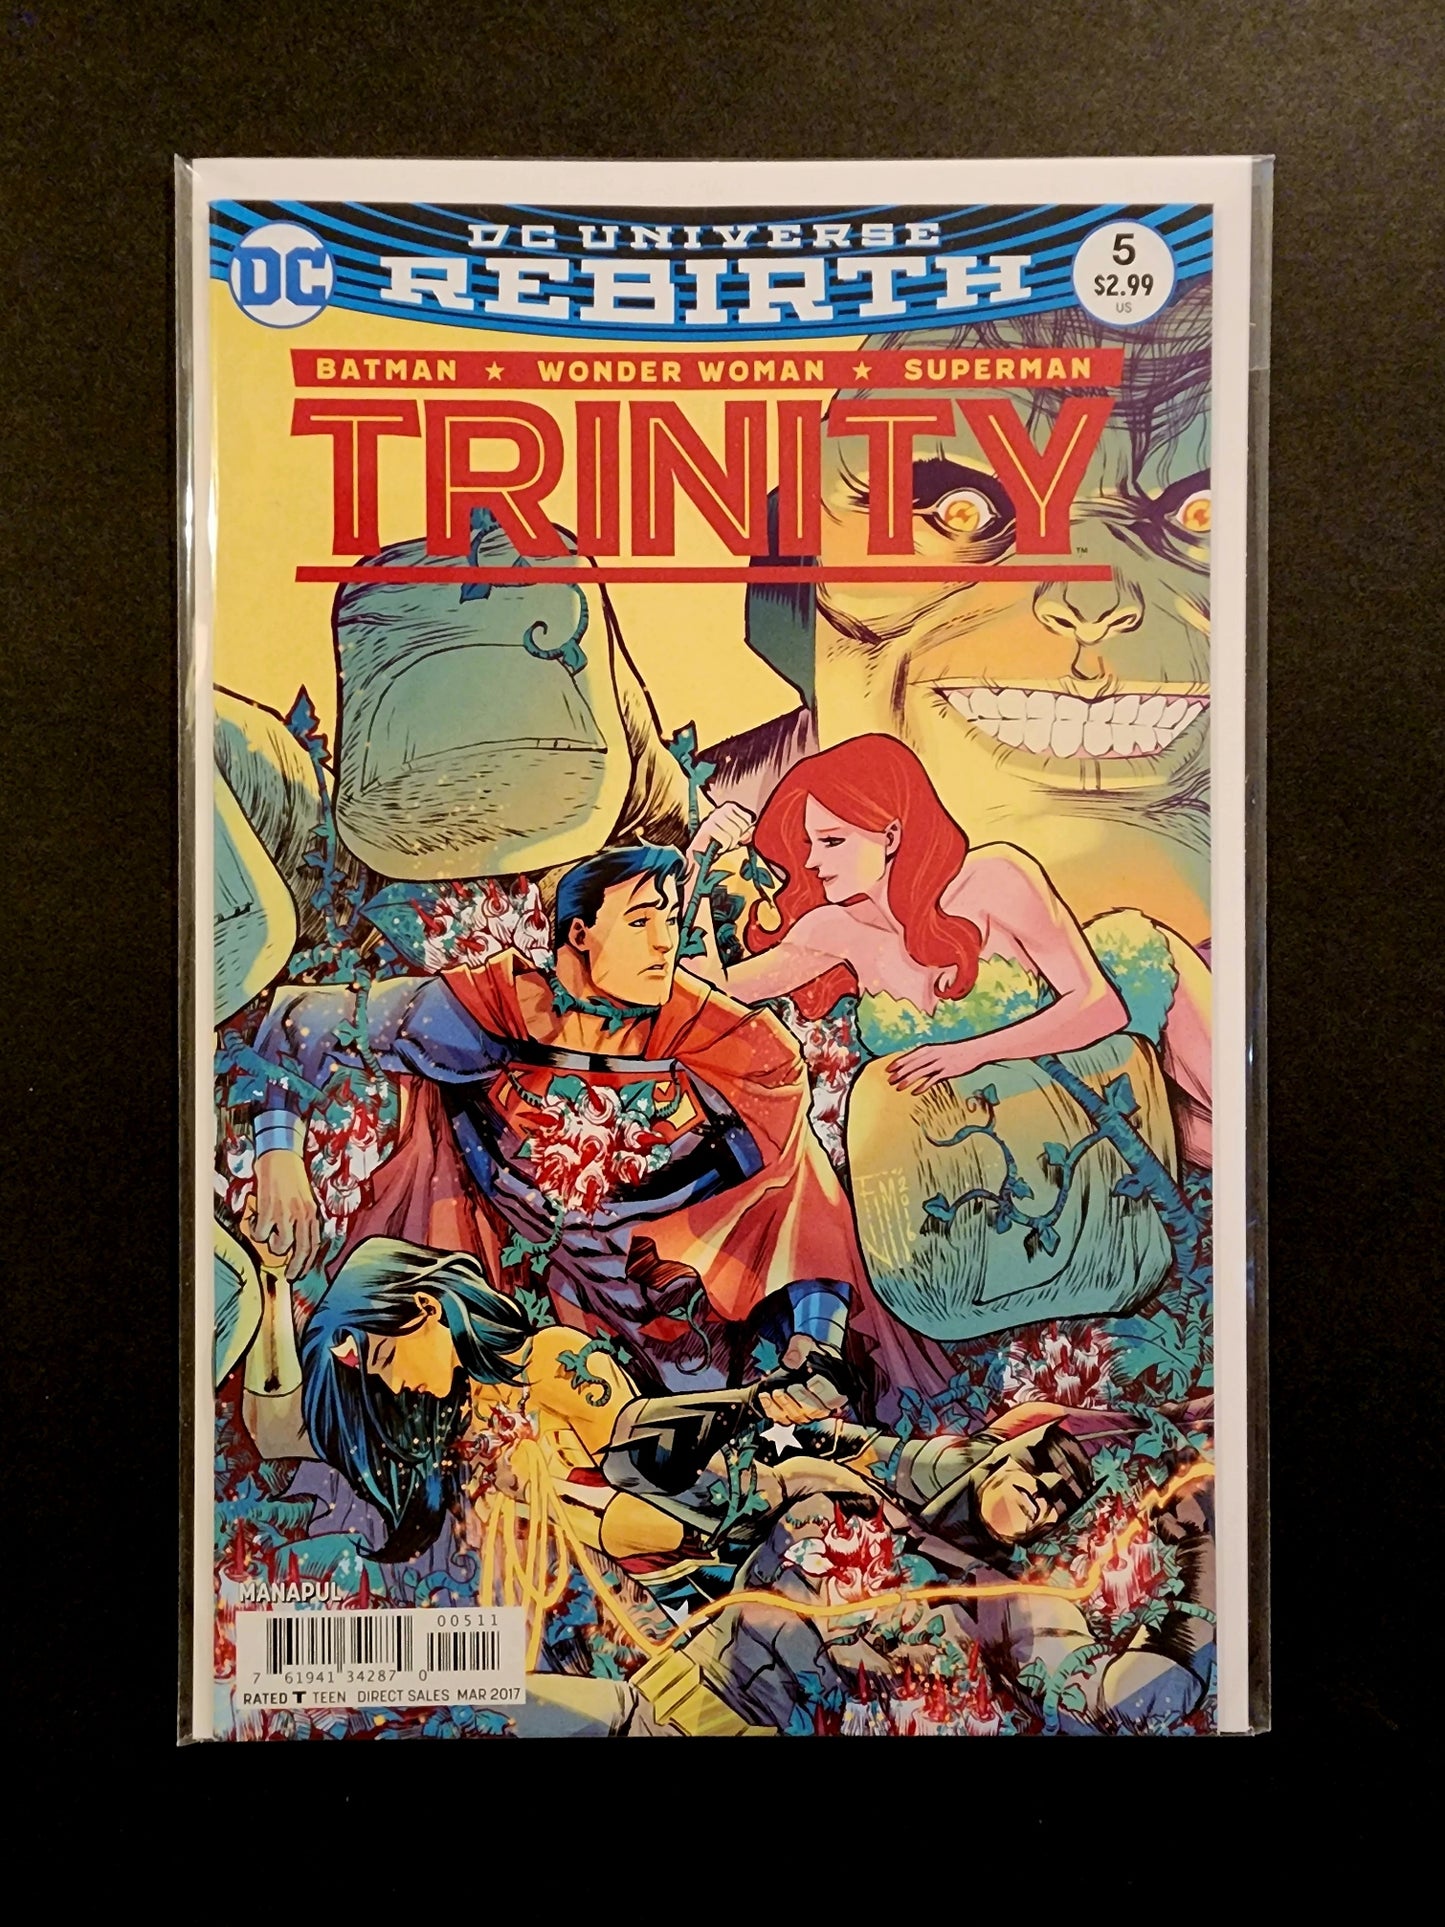 Trinity (Vol. 2) #5 (NM)